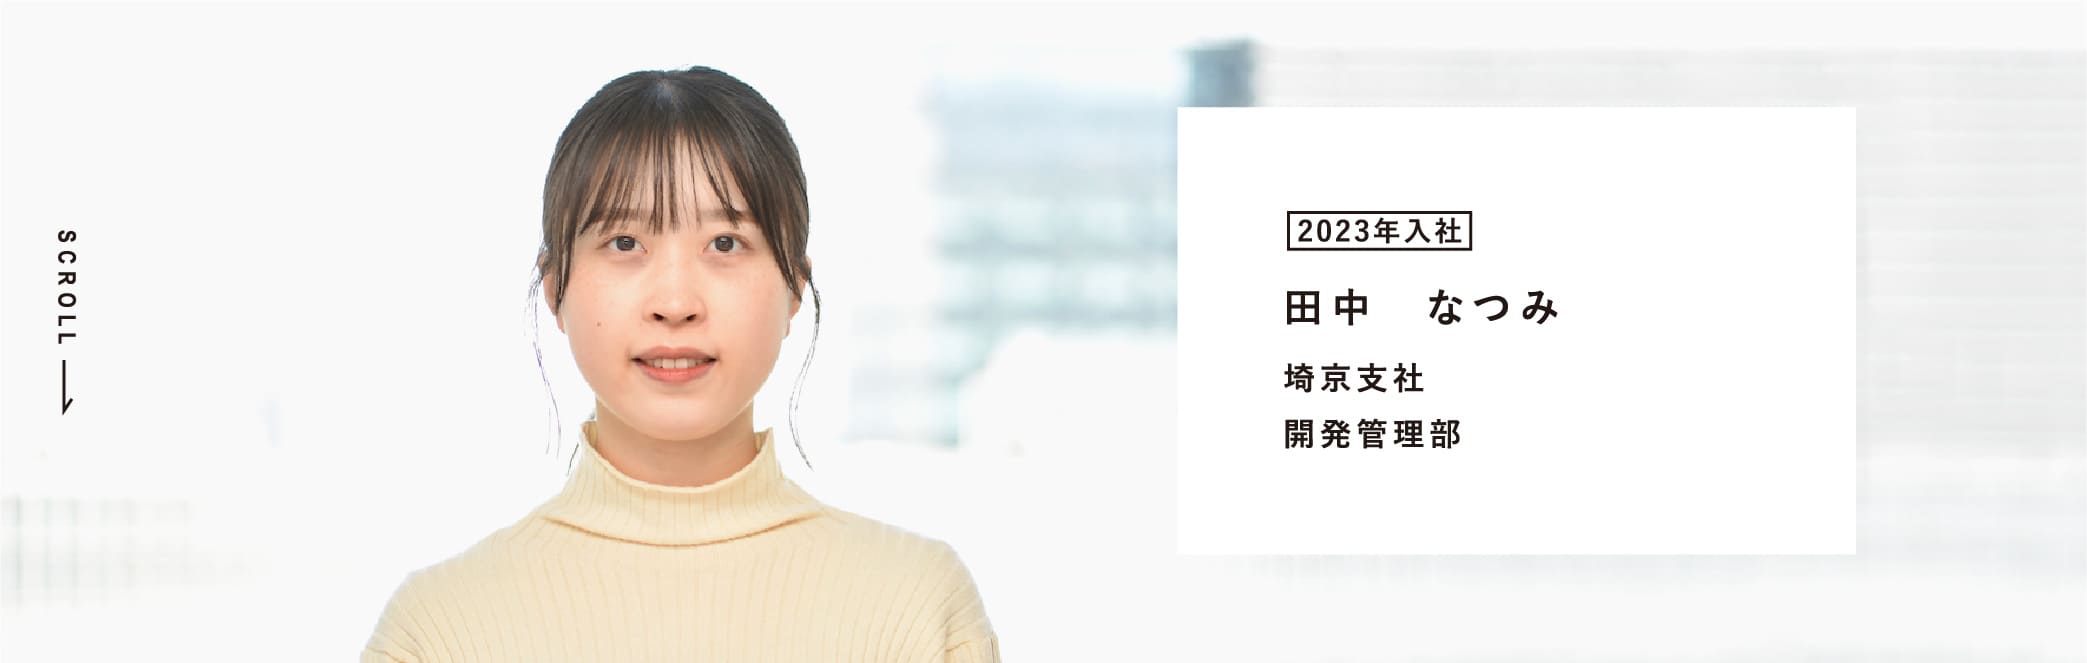 2023年入社 田中　なつみ 埼京支社 開発管理部